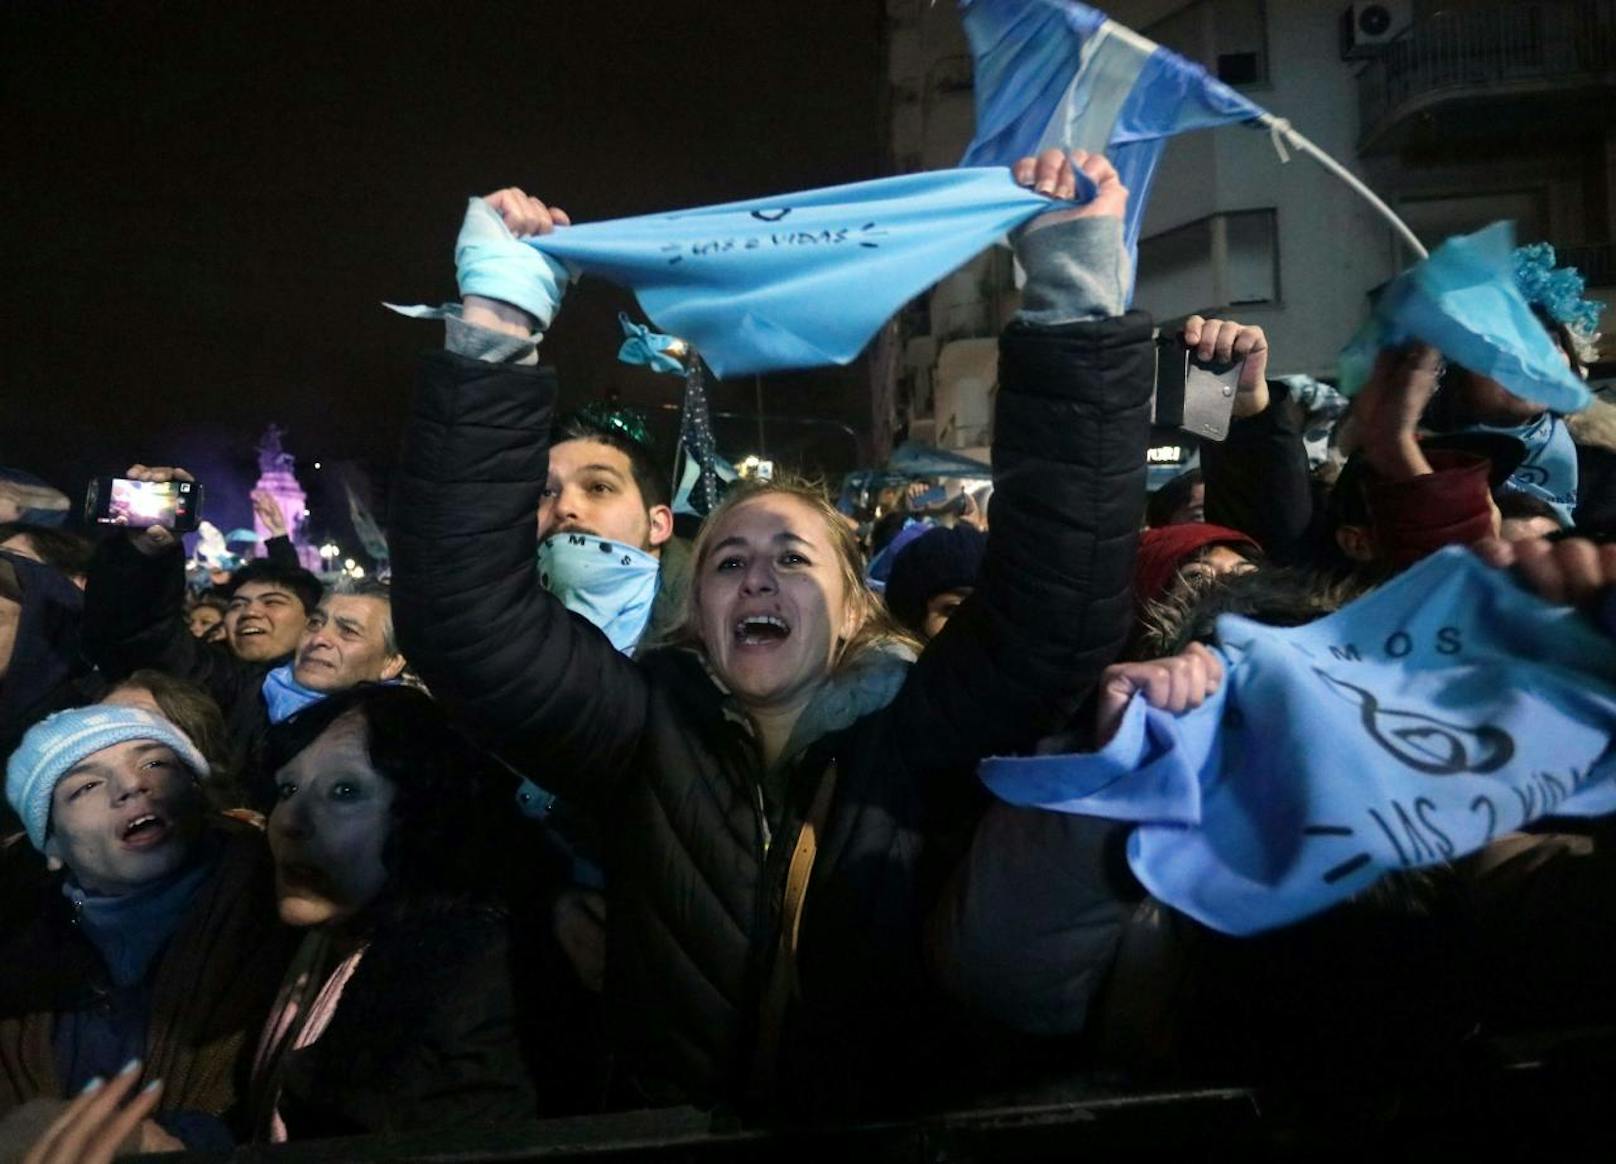 Das argentinische Parlament stimmte mit knapper Mehrheit für die Beibehaltung des gegenwärtigen Abtreibungsverbots. Tausende - vor allem Frauen - demonstrierten gegen die Entscheidung.